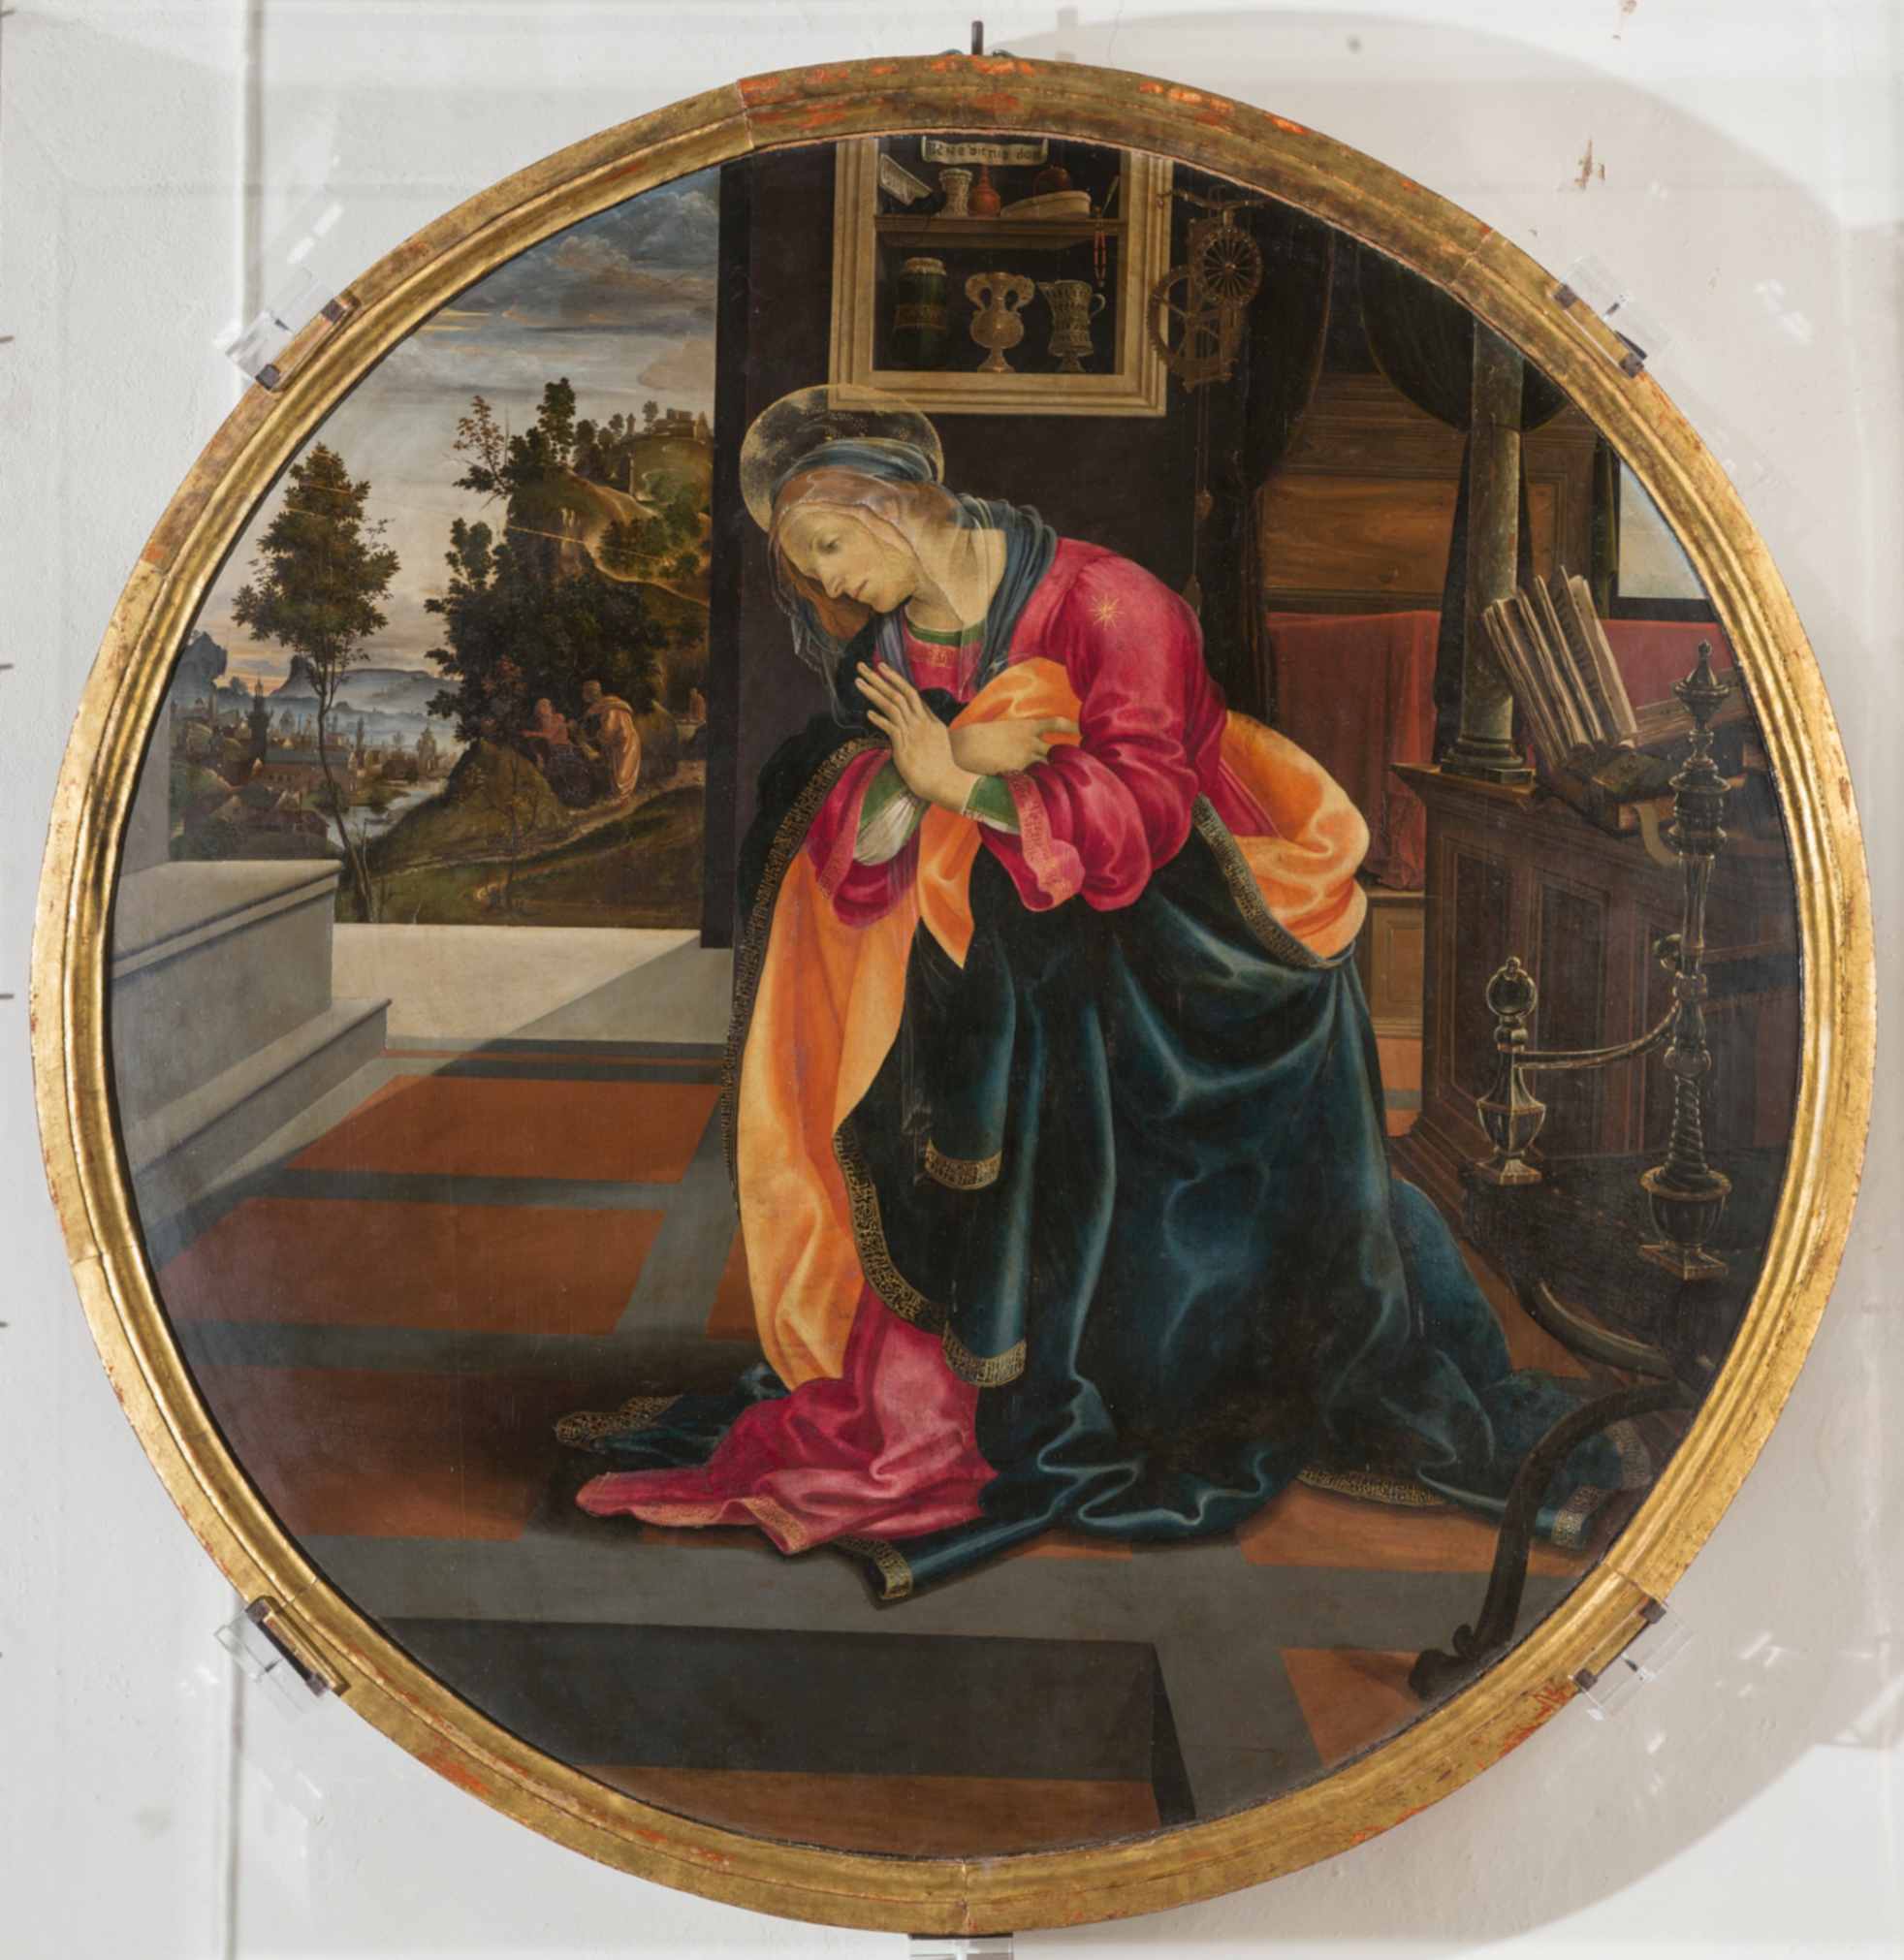 Filippino Lippi Vergine annunciata 1483-84 dipinto su tavola, diametro cm 110 San Gimignano (SI), Museo Civico